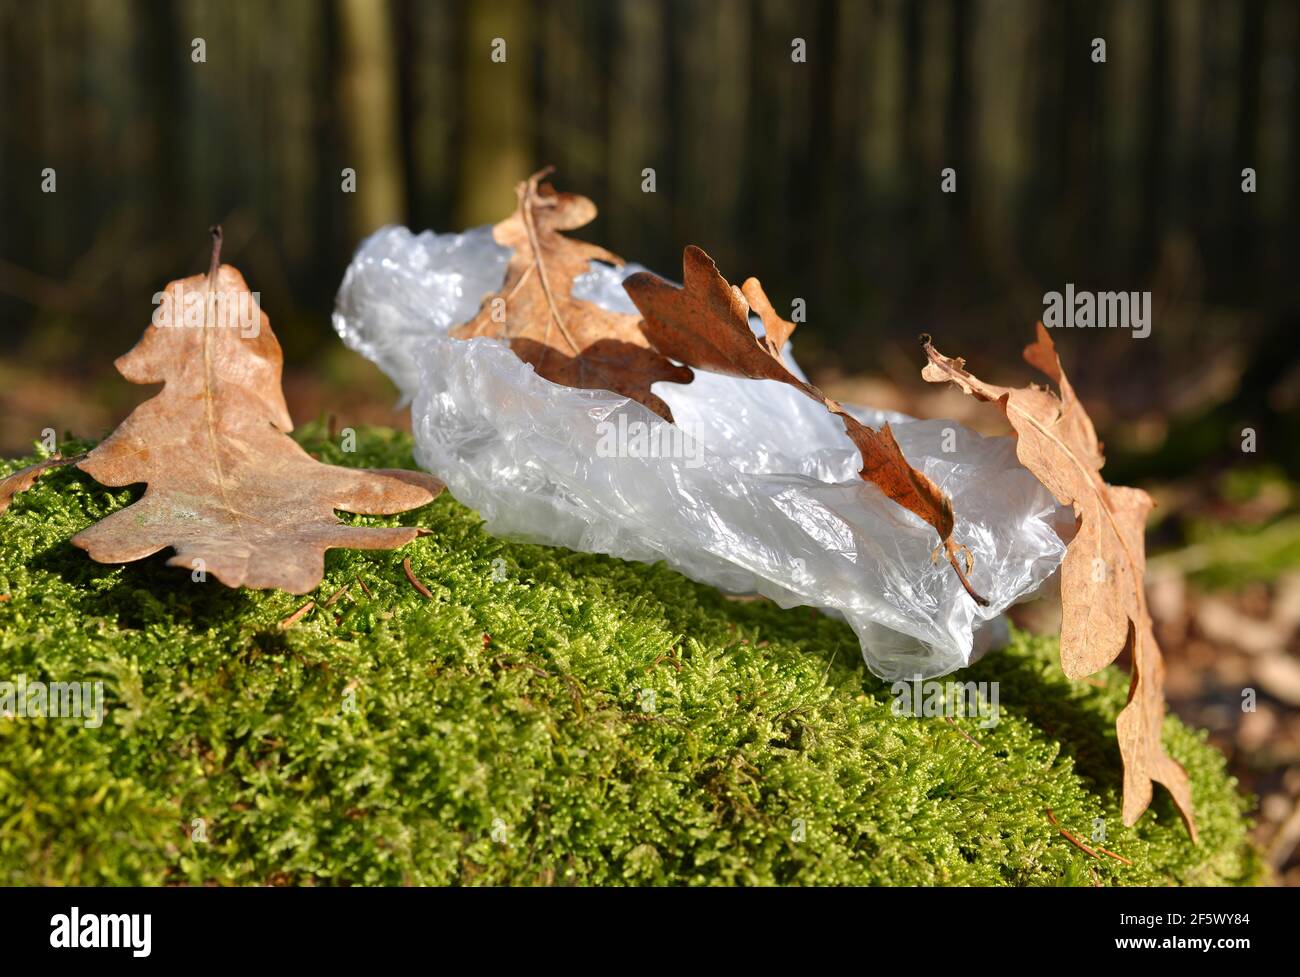 Bolsa de plástico sobre musgo. Contaminación basura en el bosque. Concepto de conservación de la naturaleza. Foto de stock